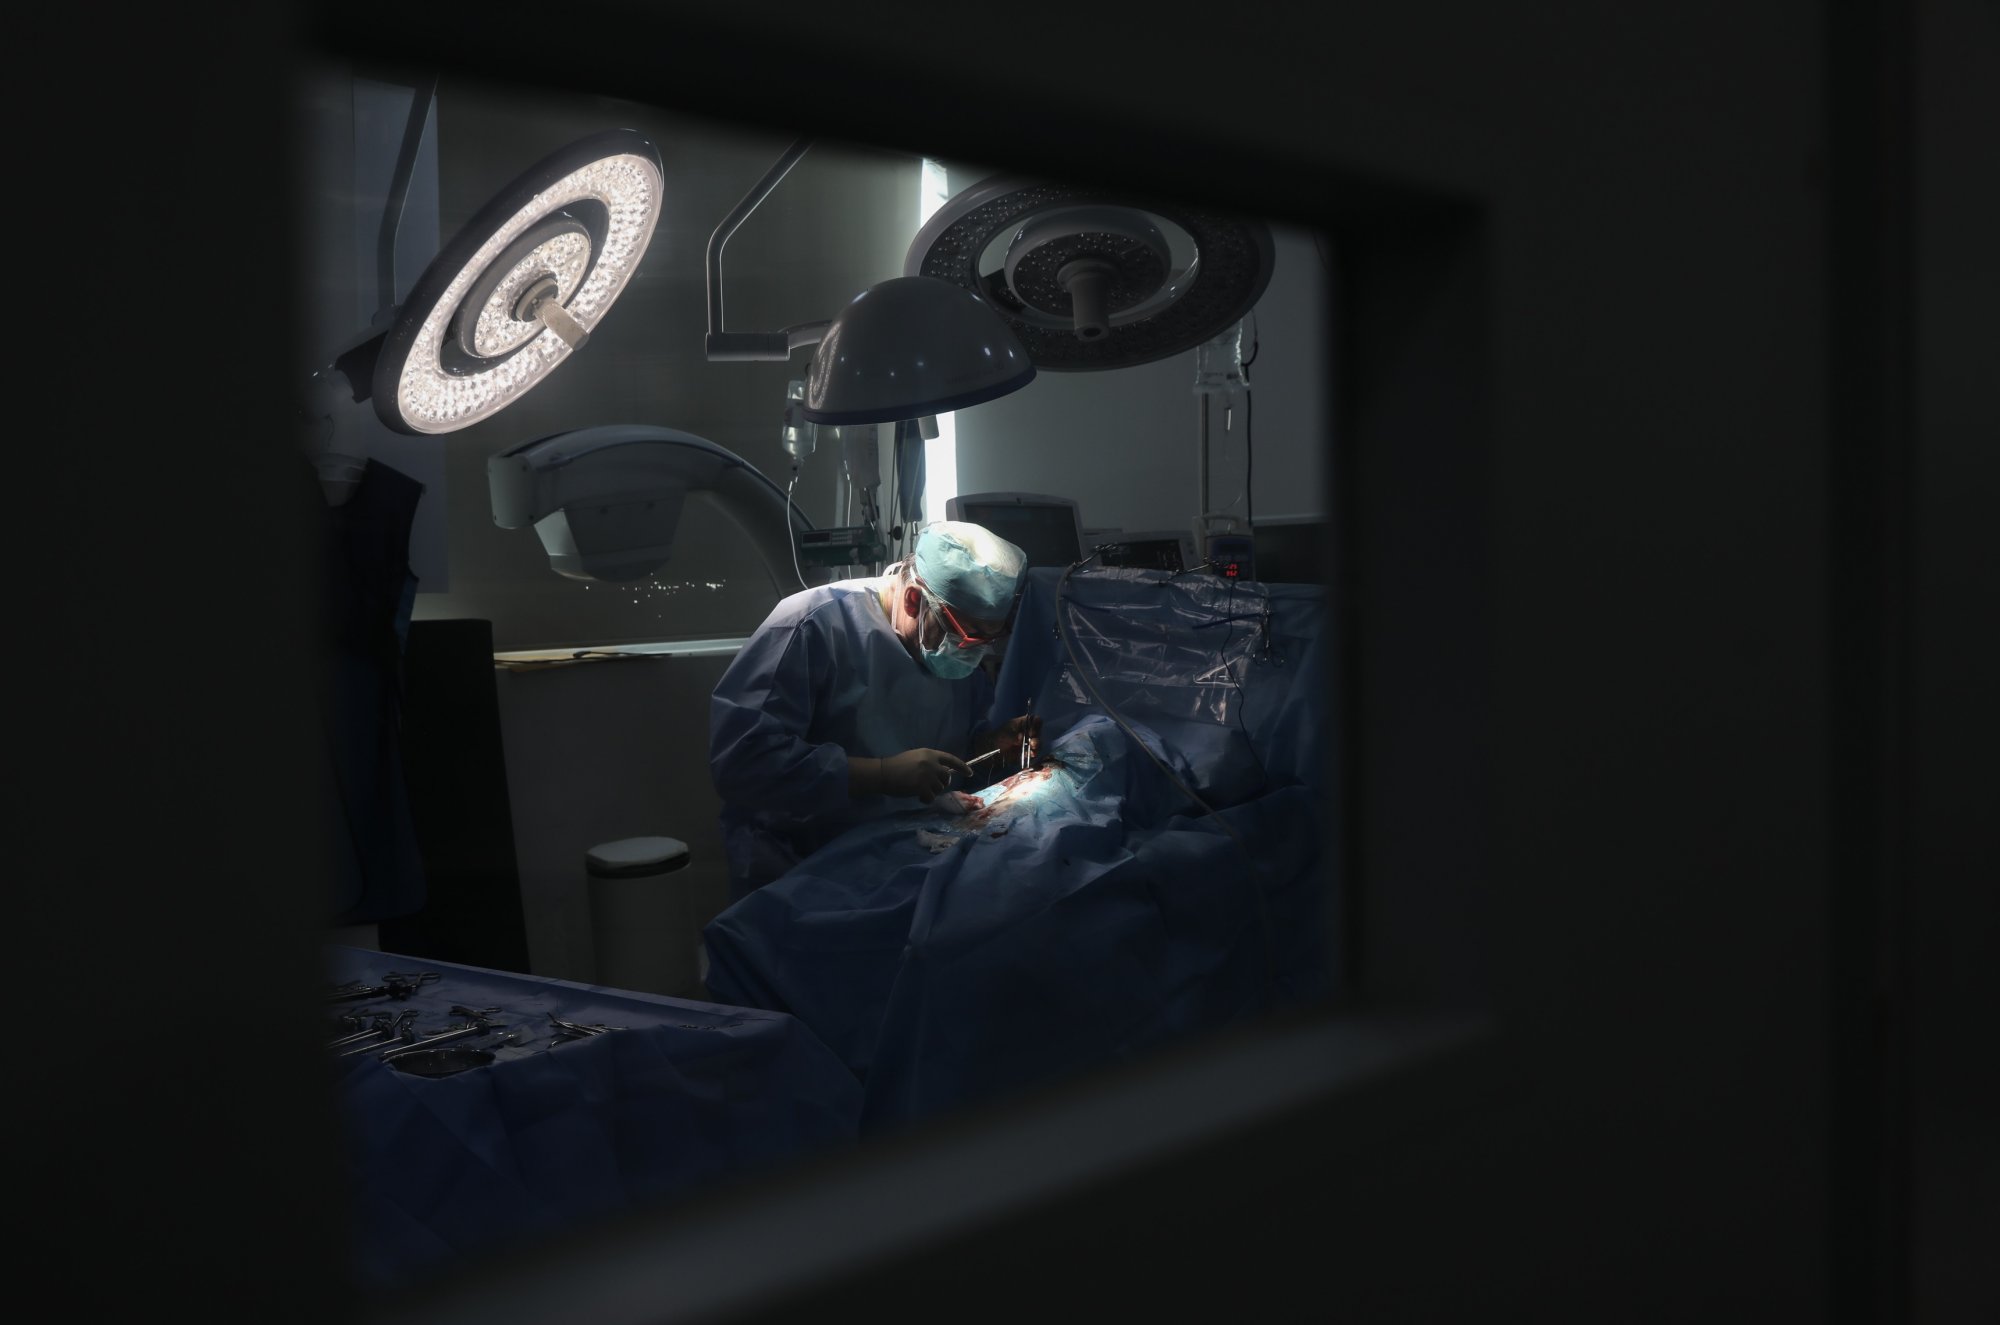 Απογευματινά χειρουργεία: Σε εφαρμογή το «νόμιμο» φακελάκι - Οι όροι, οι αμοιβές και το ωράριο